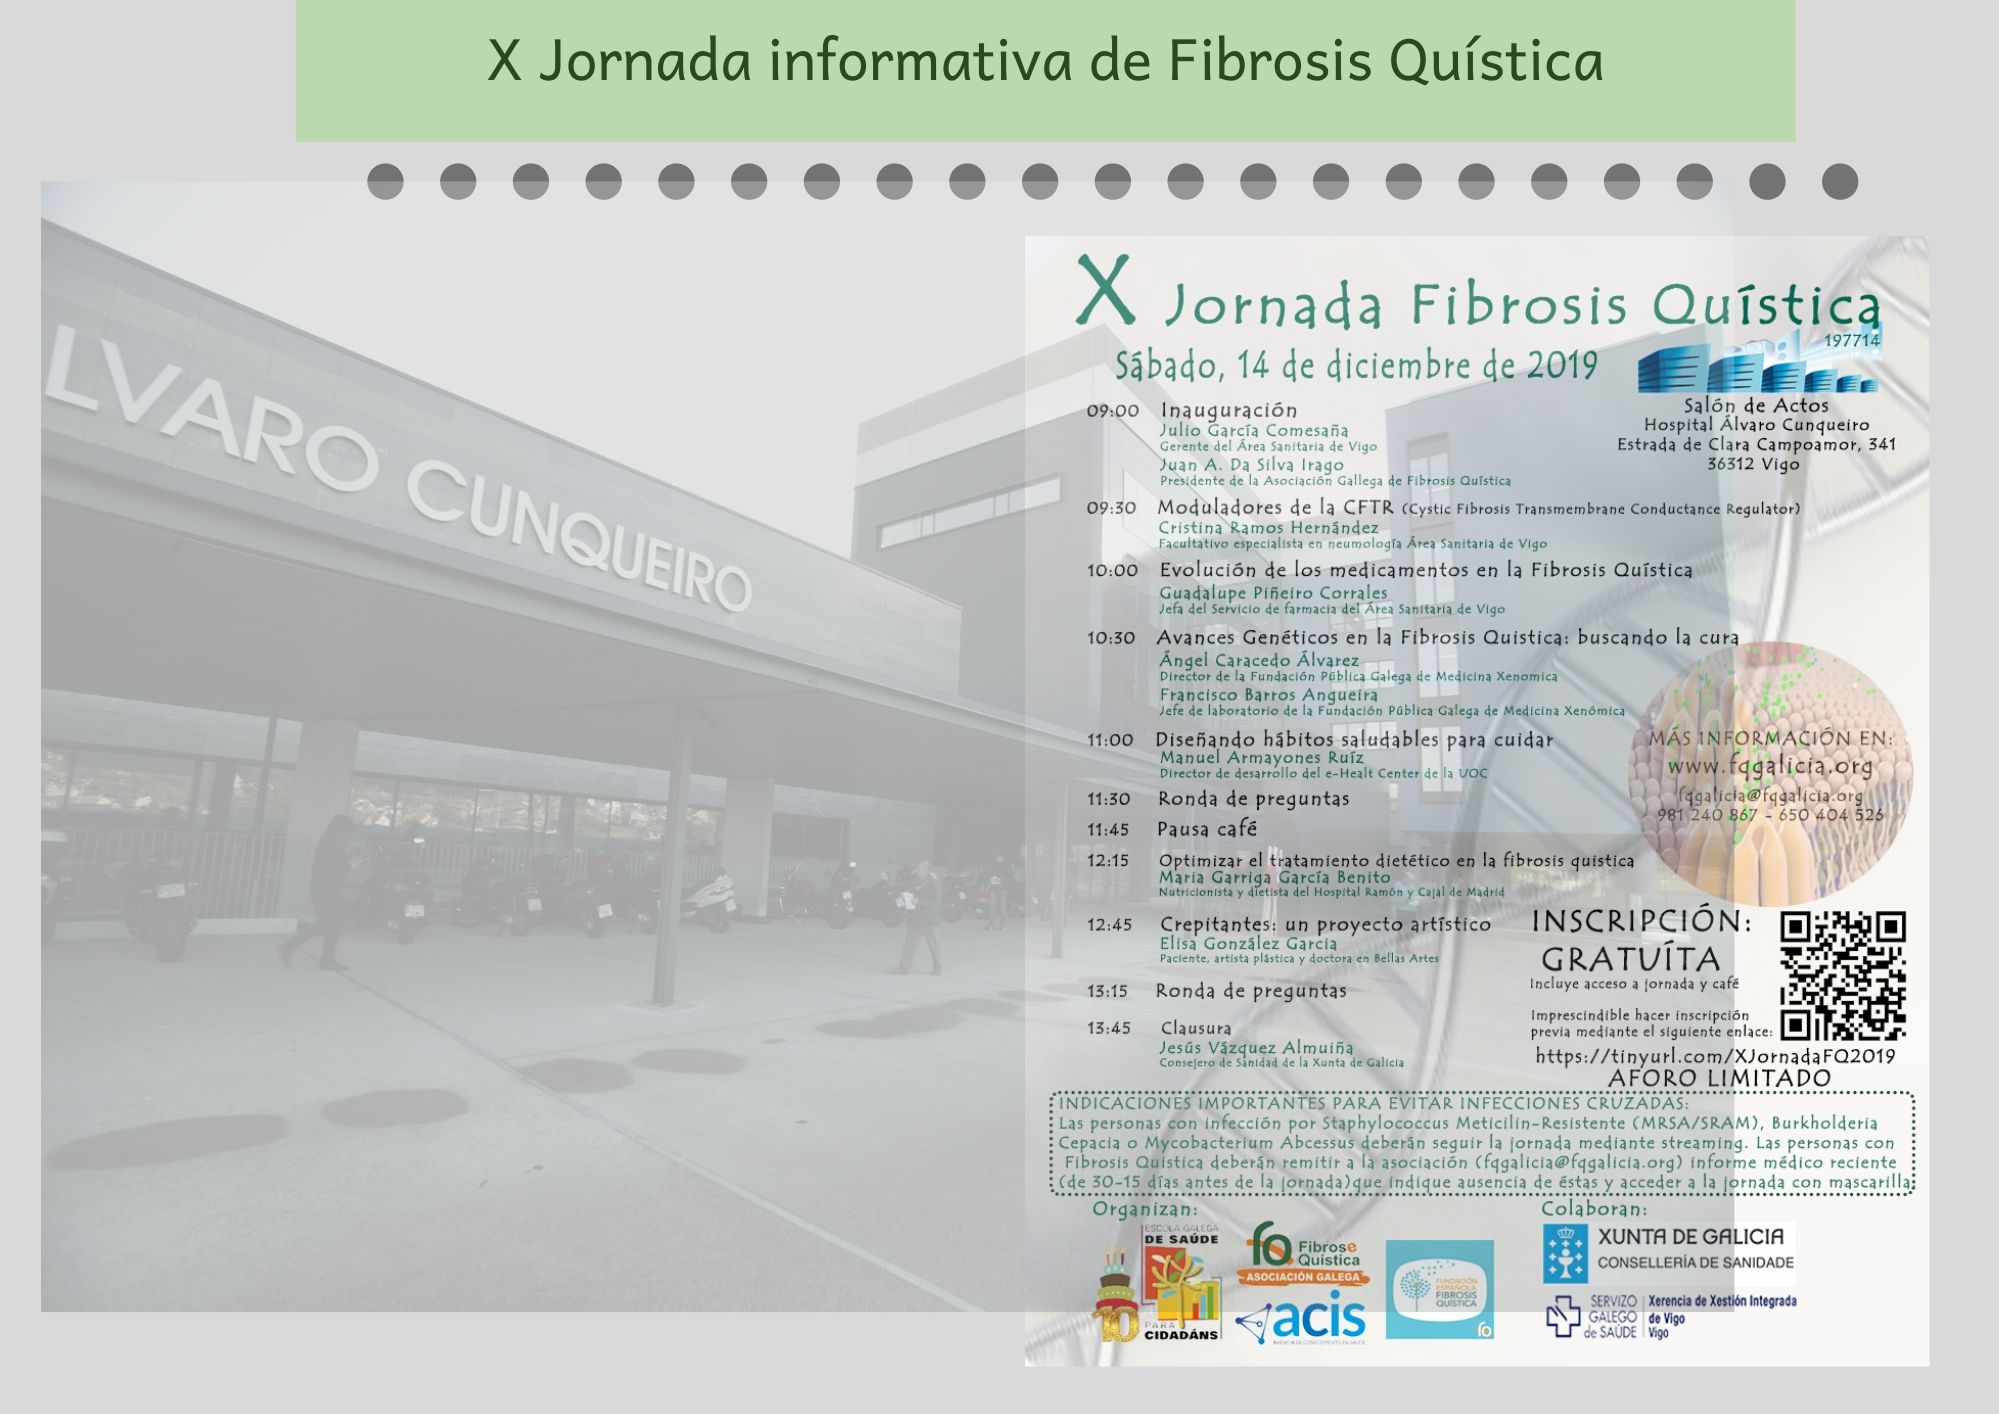 X Jornada informativa de Fibrosis Quística. Se realizará en el Salón de Actos del Hospital Álvaro Cunqueiro de Vigo.